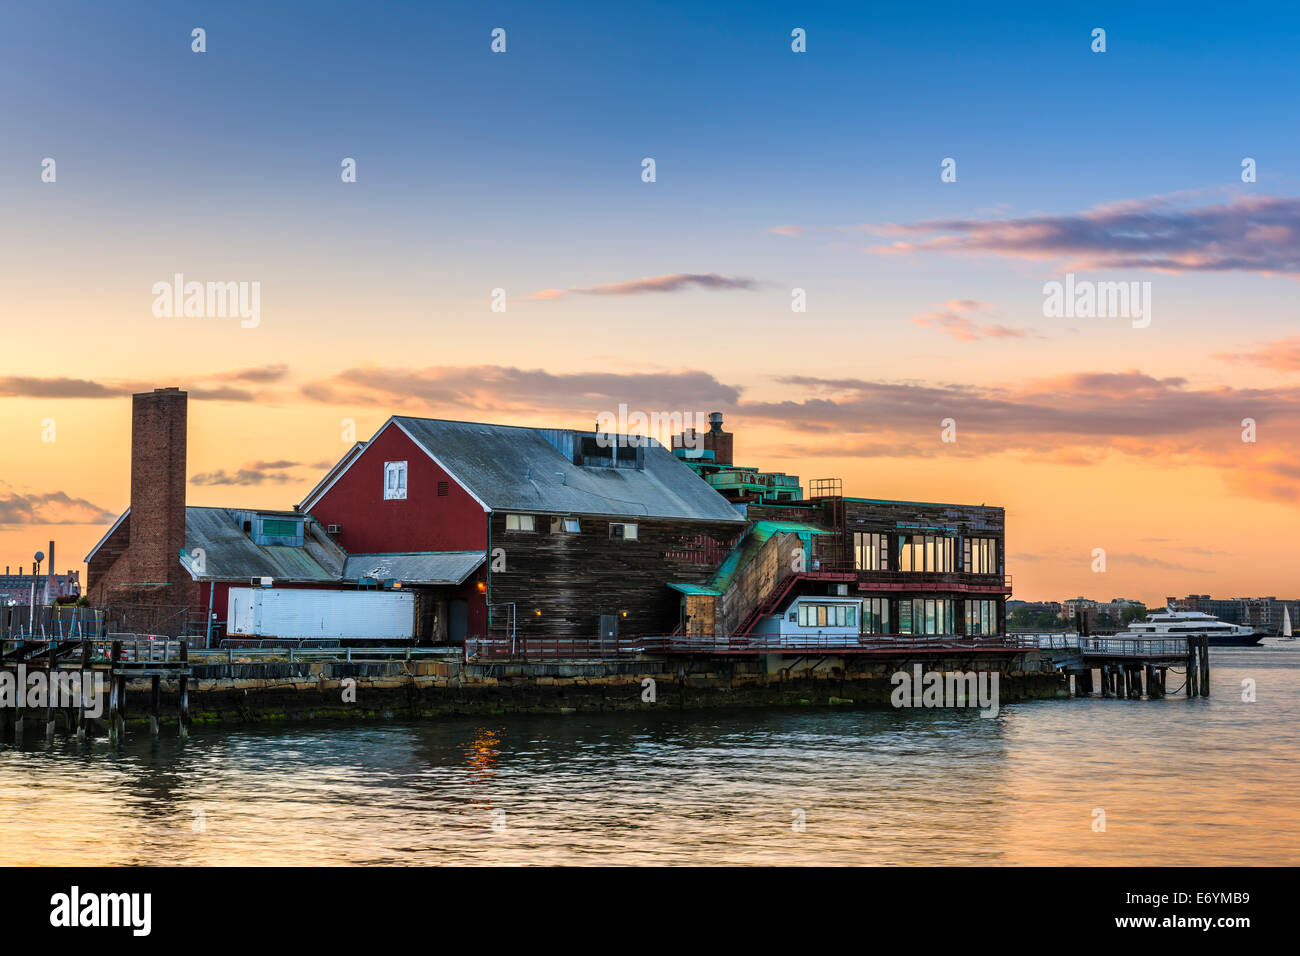 Eines der Gebäude gegenüber dem Hafen Spaziergang bei Sonnenuntergang entlang der Seaport District von Boston, Massachusetts - USA. Stockfoto